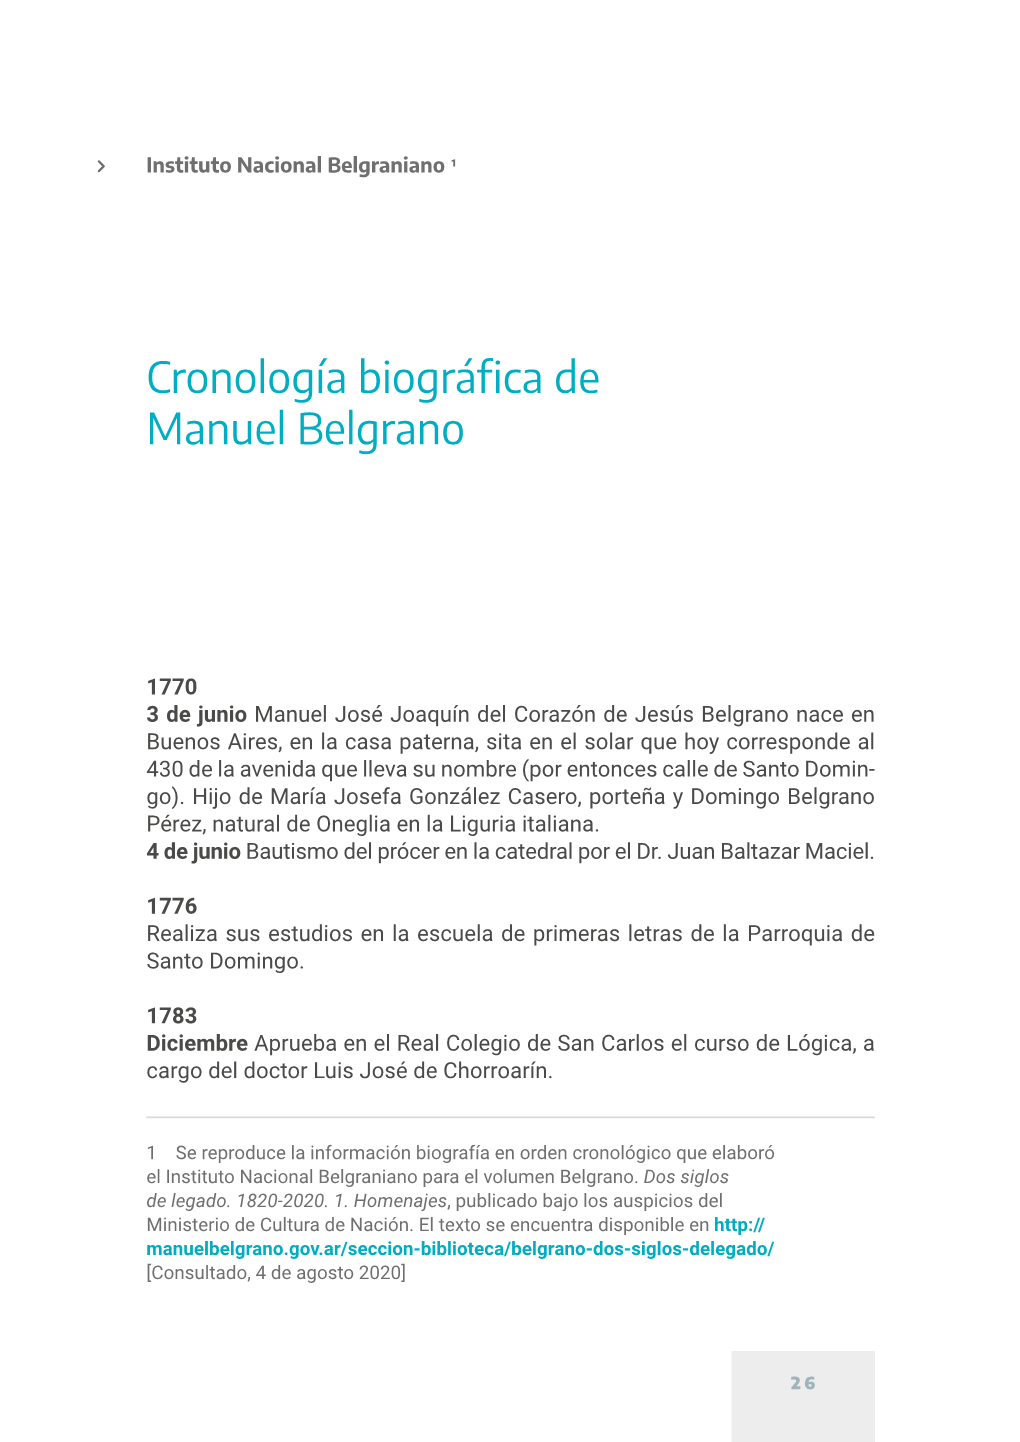 Revista Anales De La Educación Común, Vol. 1, N° 1-2, 2020